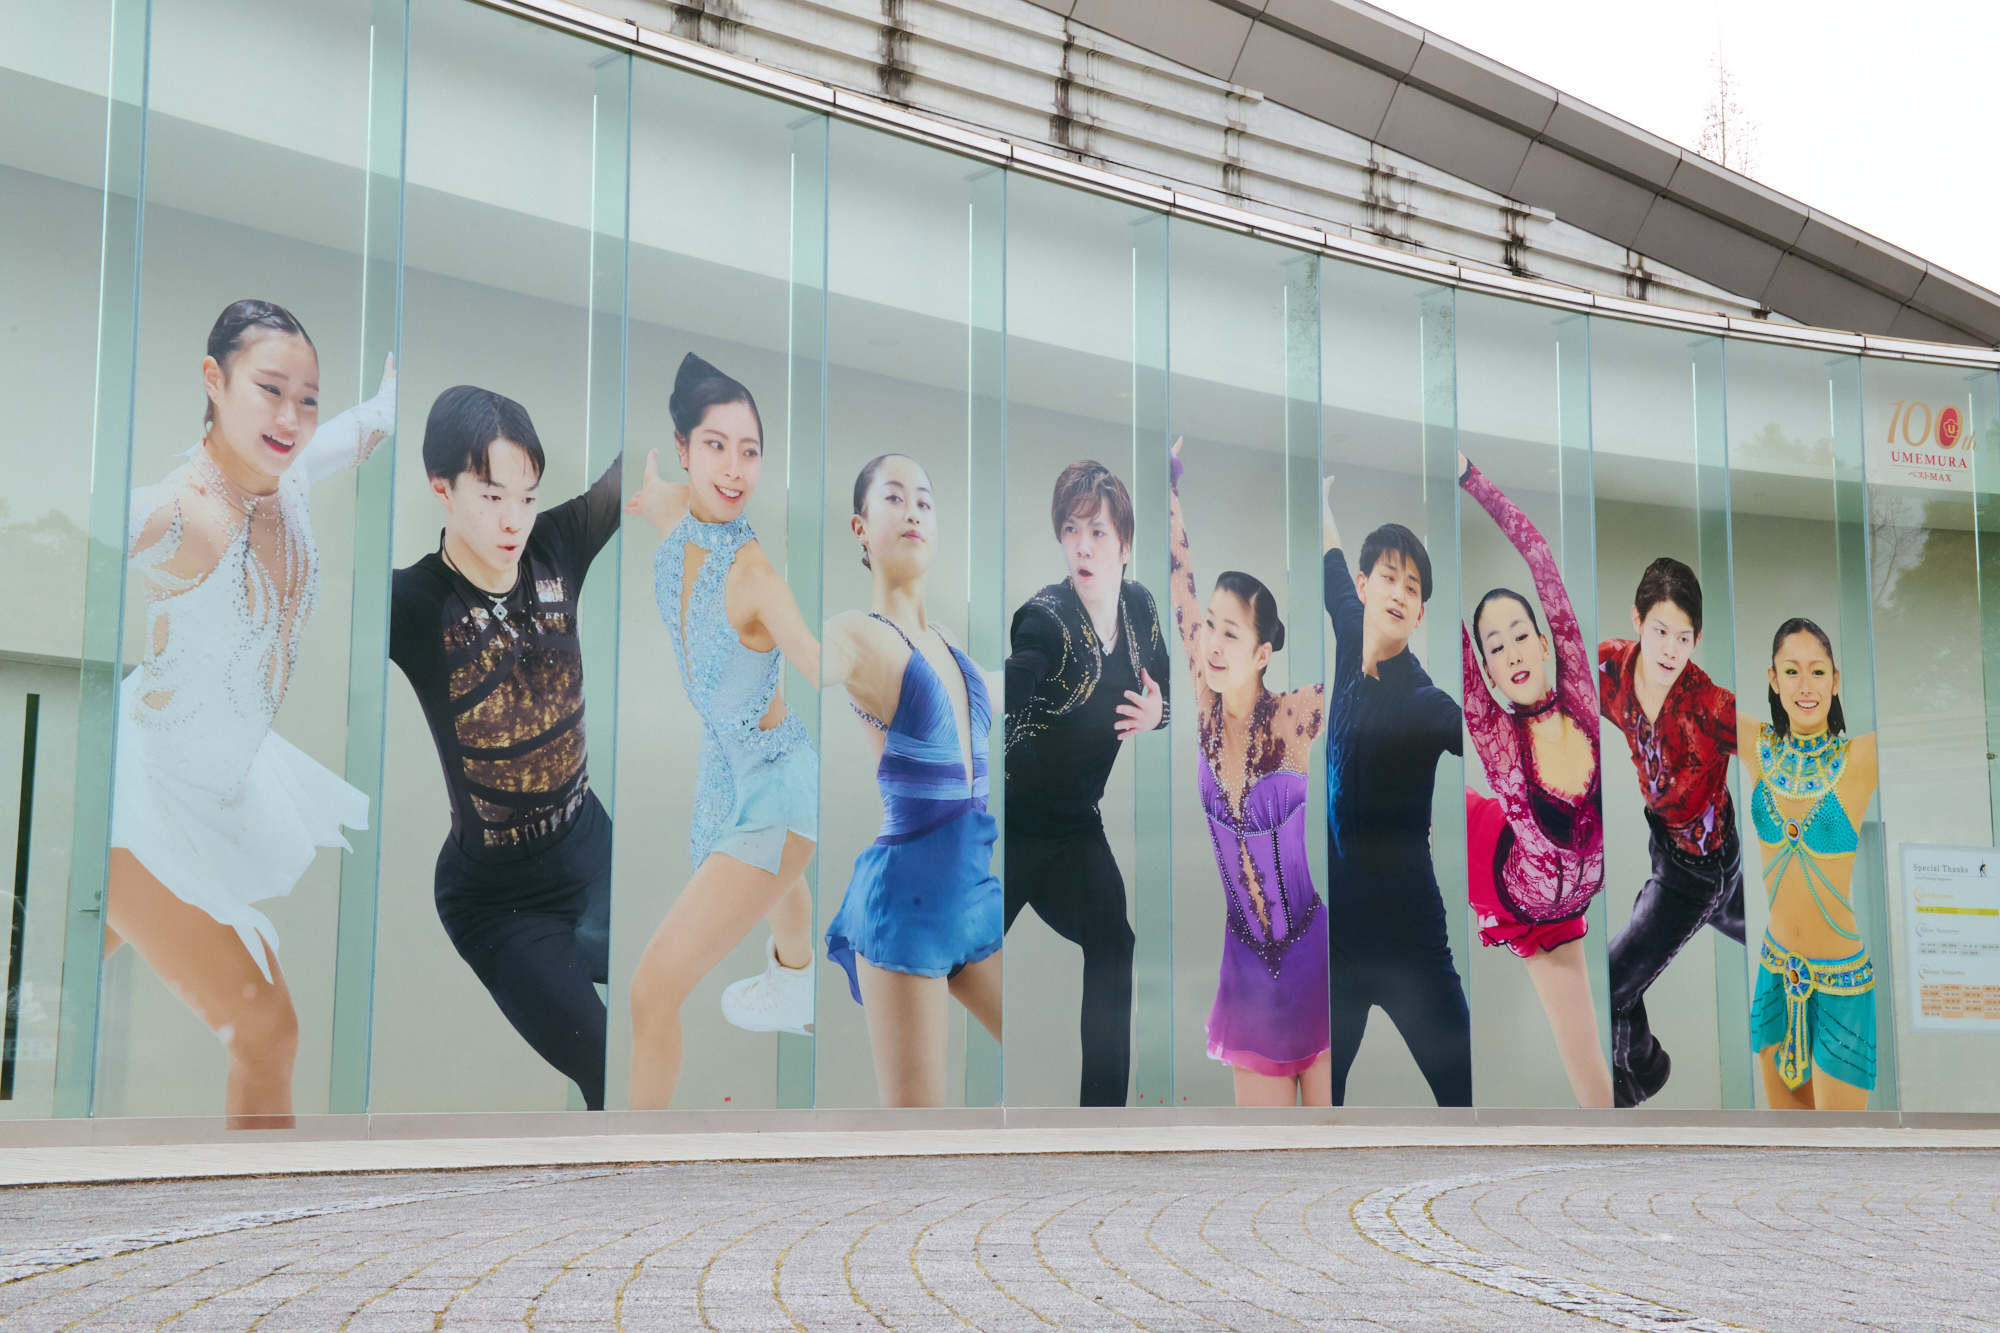 中京大学スケートリンクの外観写真